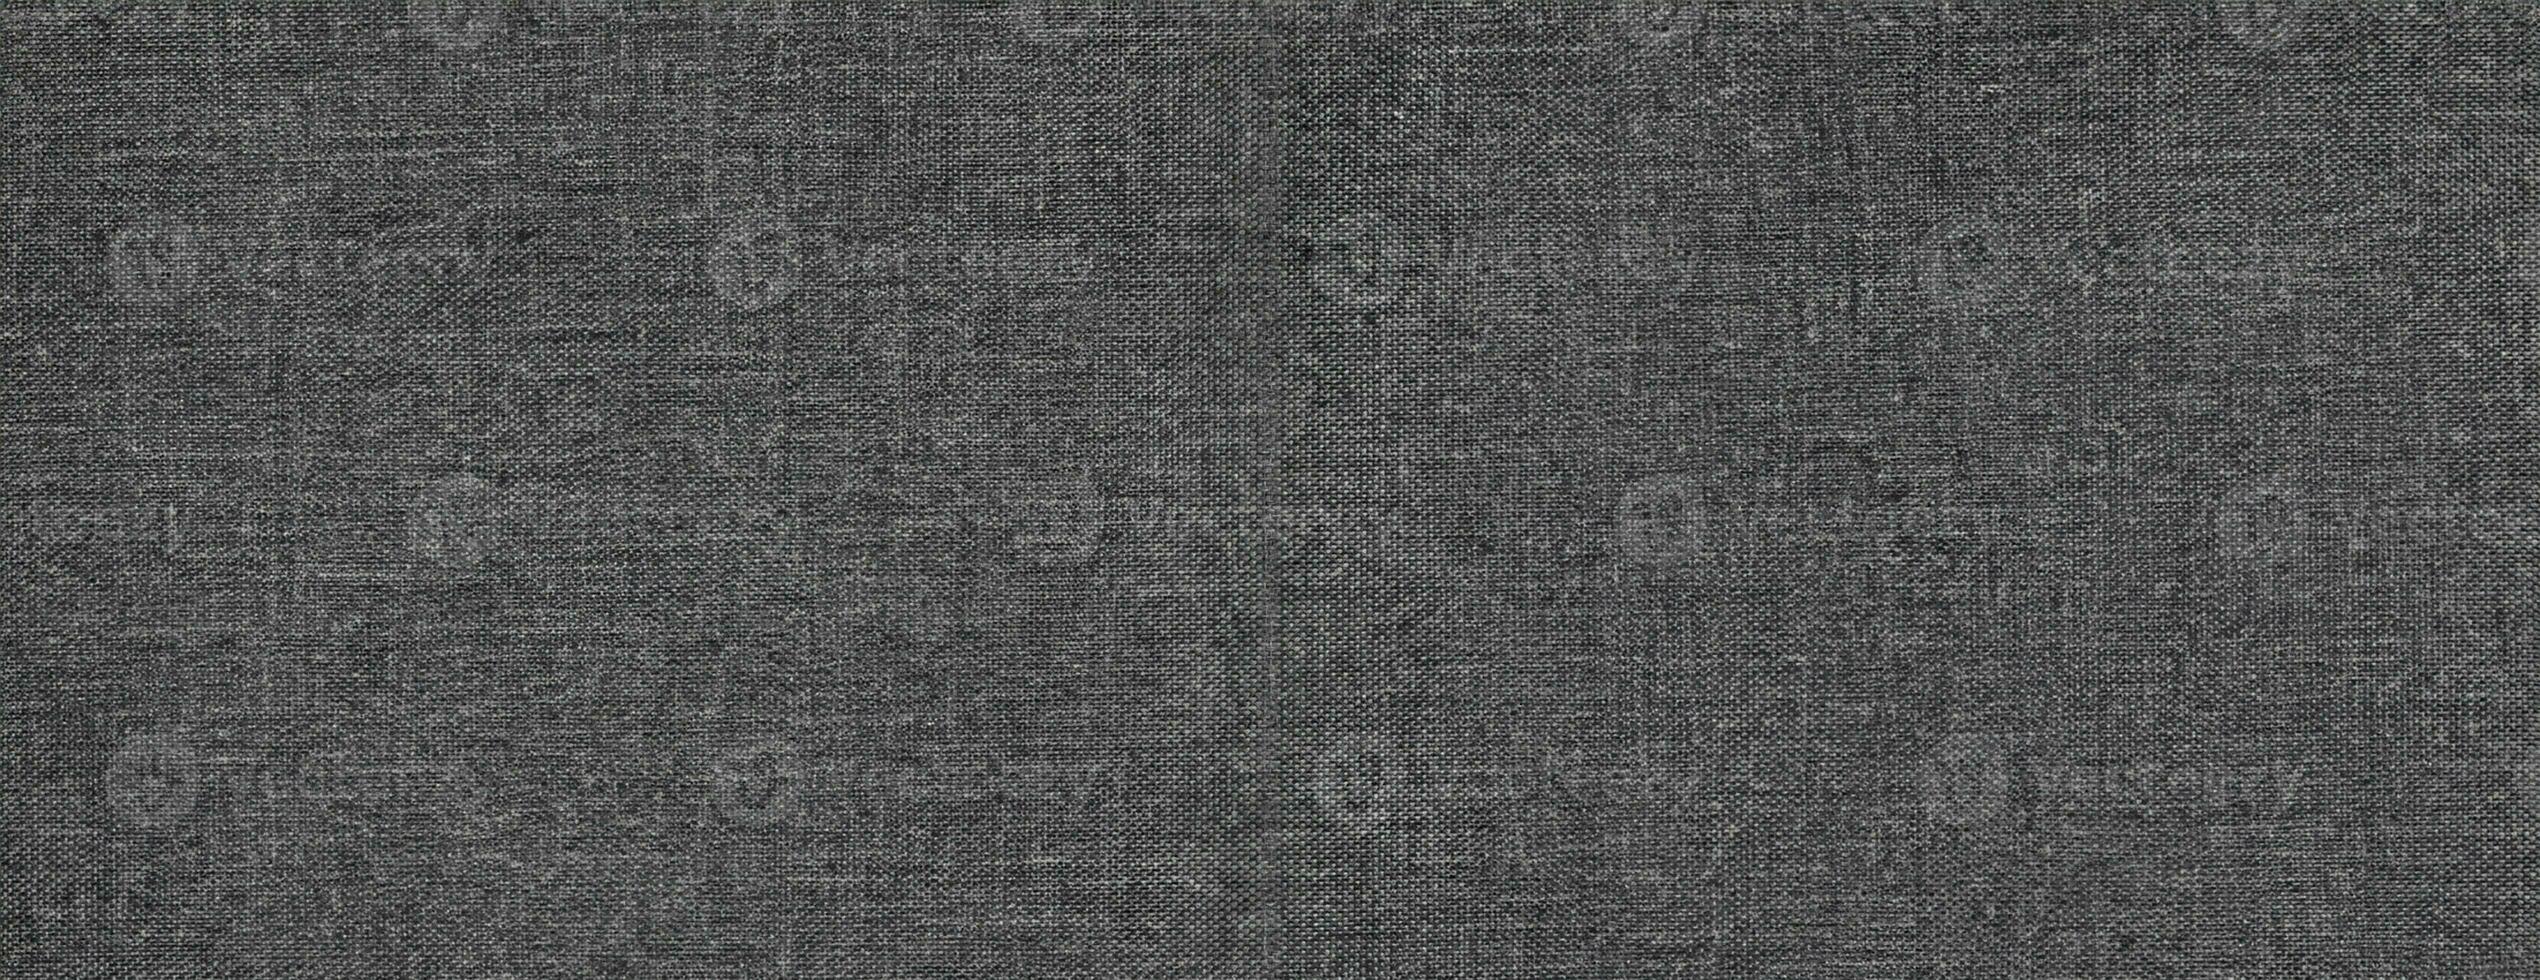 abstract grijs-zwart denim achtergrond foto